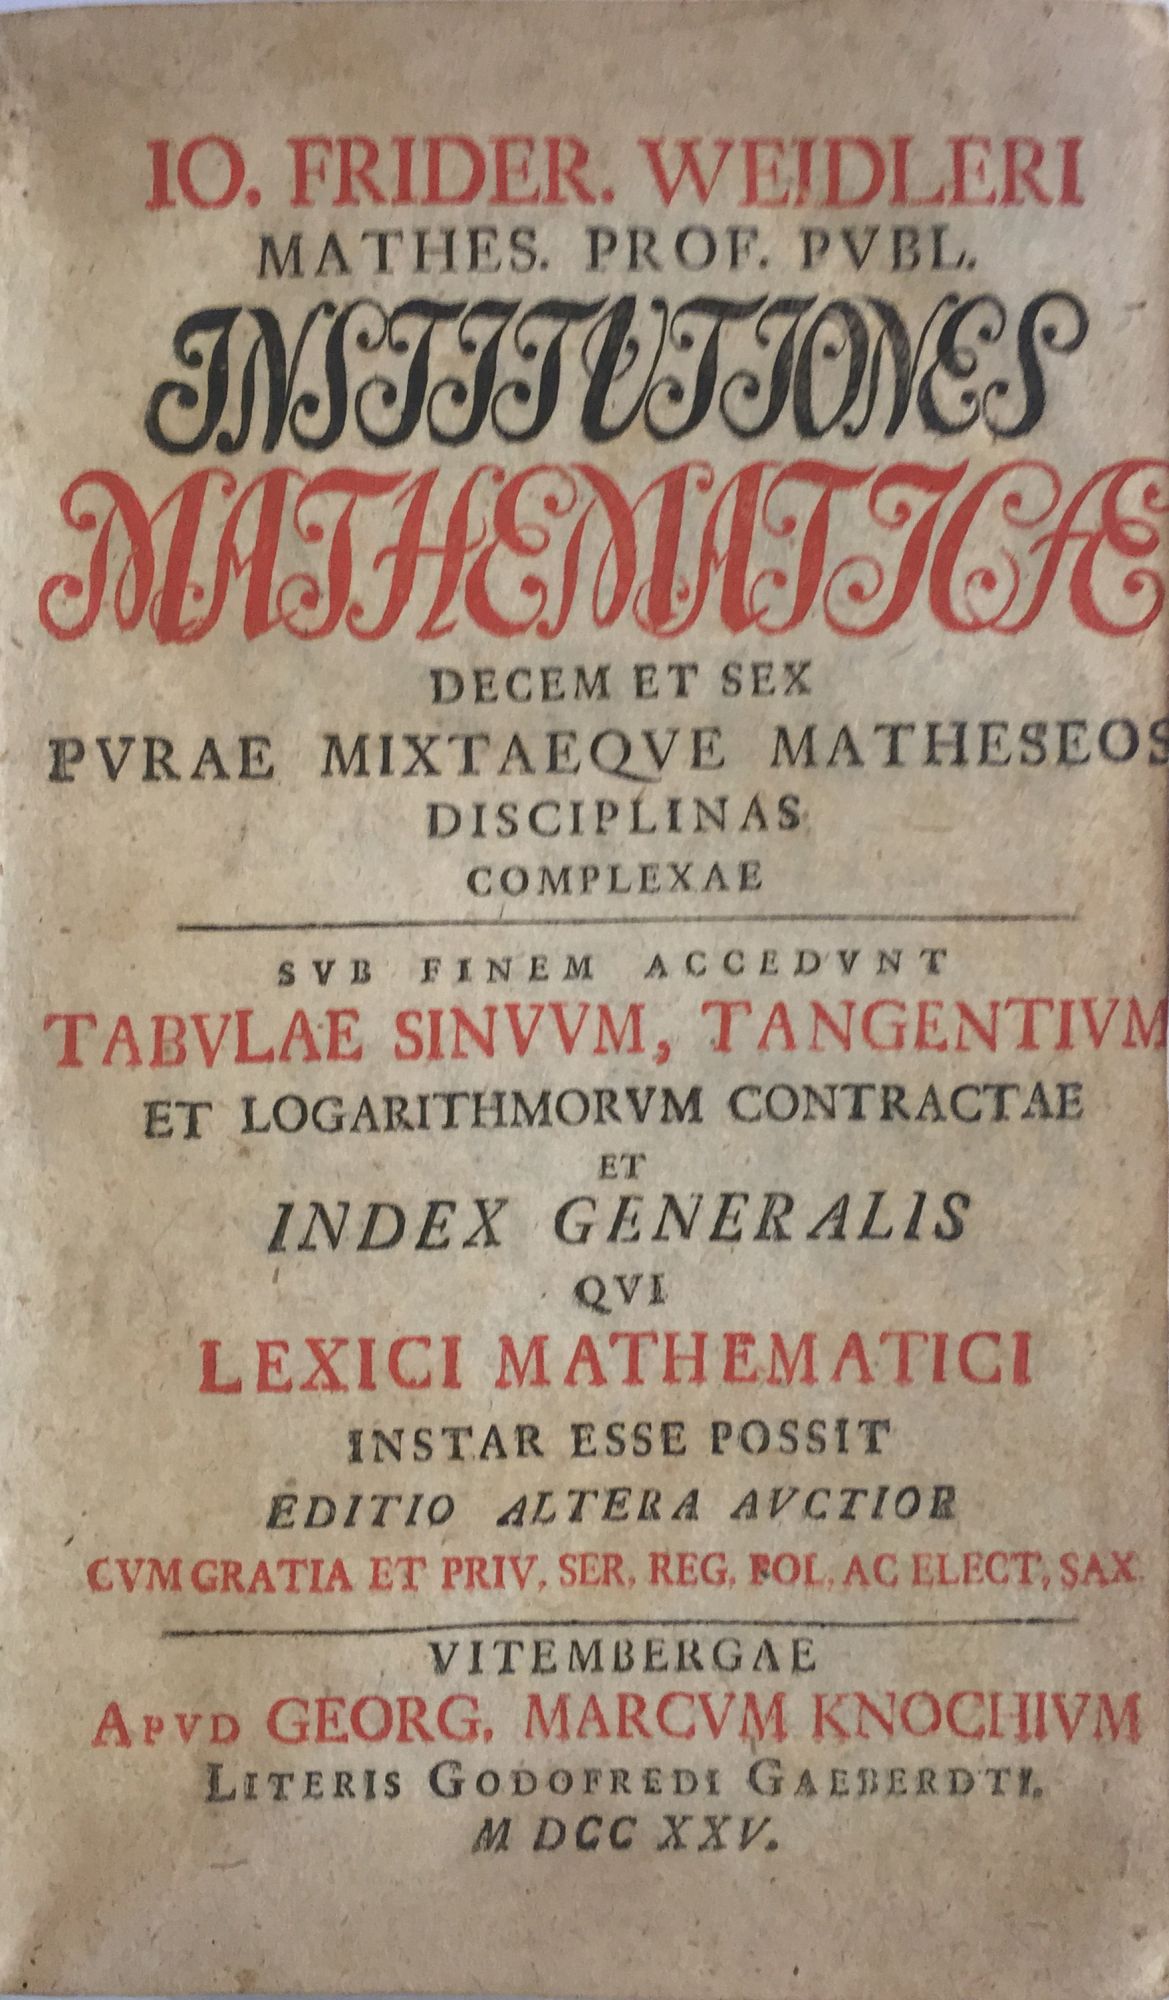 Institutiones mathematica decem et sex purae mixtaeque matheseos disciplinas complexae Io